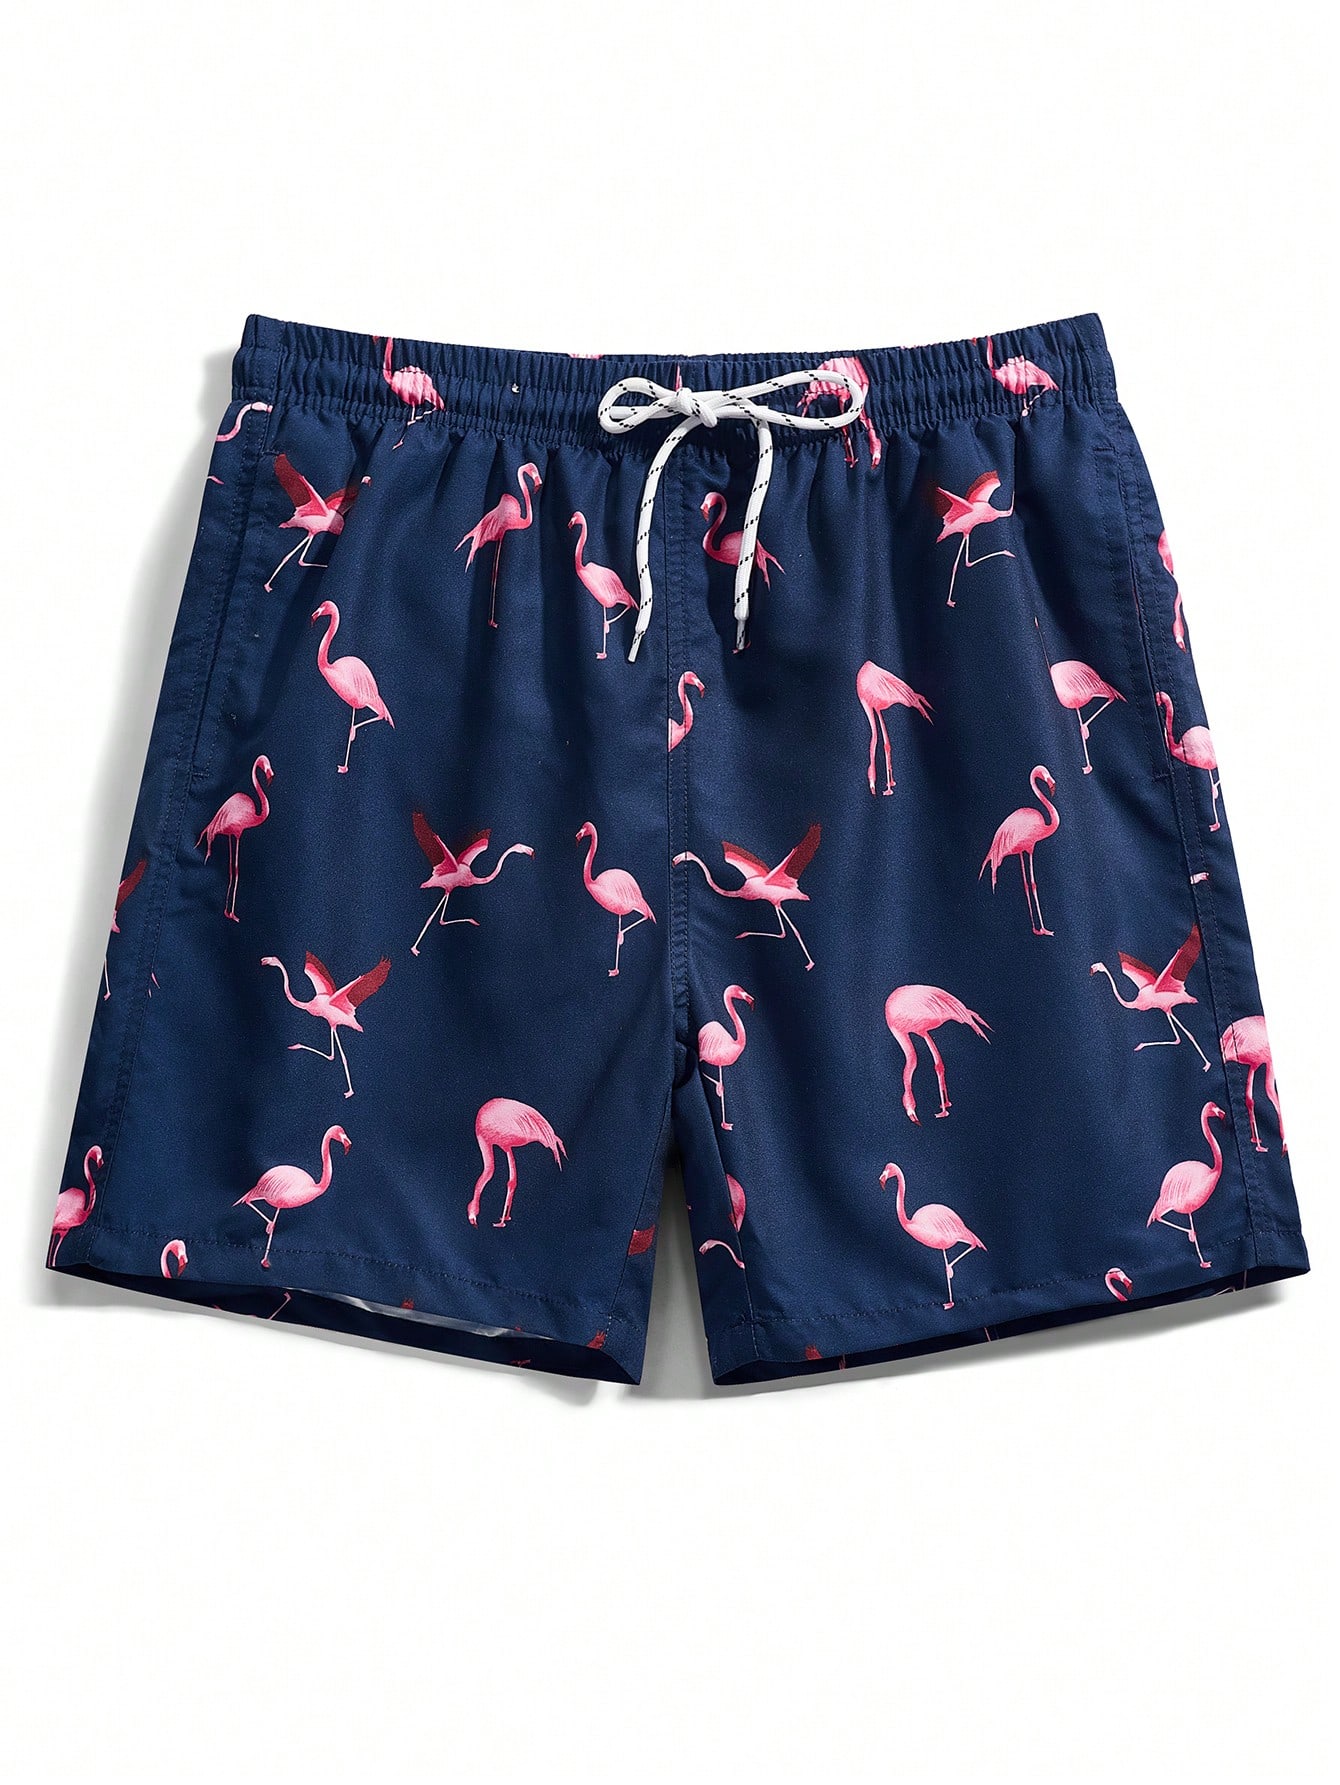 Мужские пляжные шорты Manfinity с принтом фламинго и завязками на талии, темно-синий